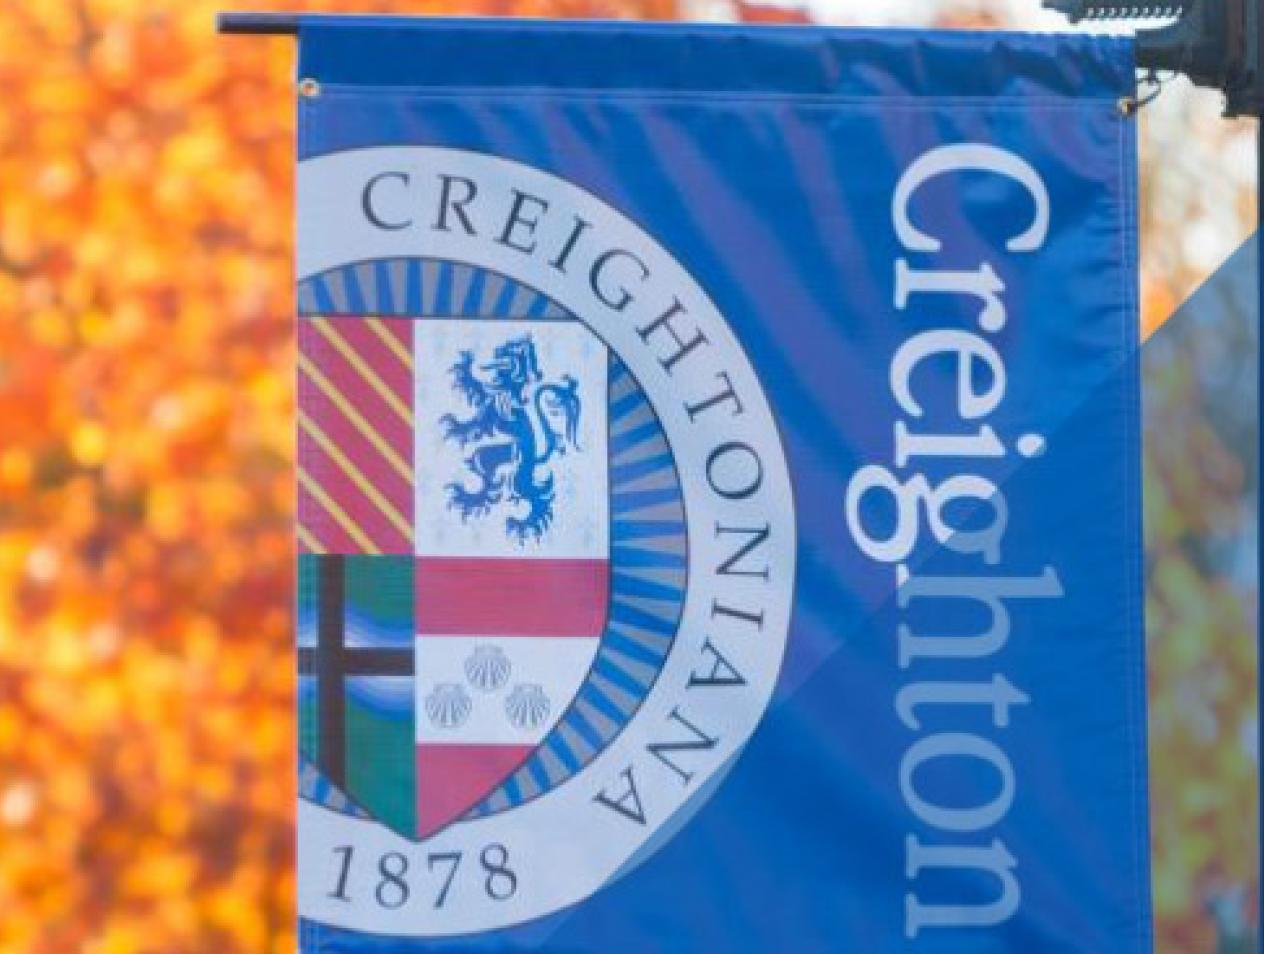 Creighton Scholarships